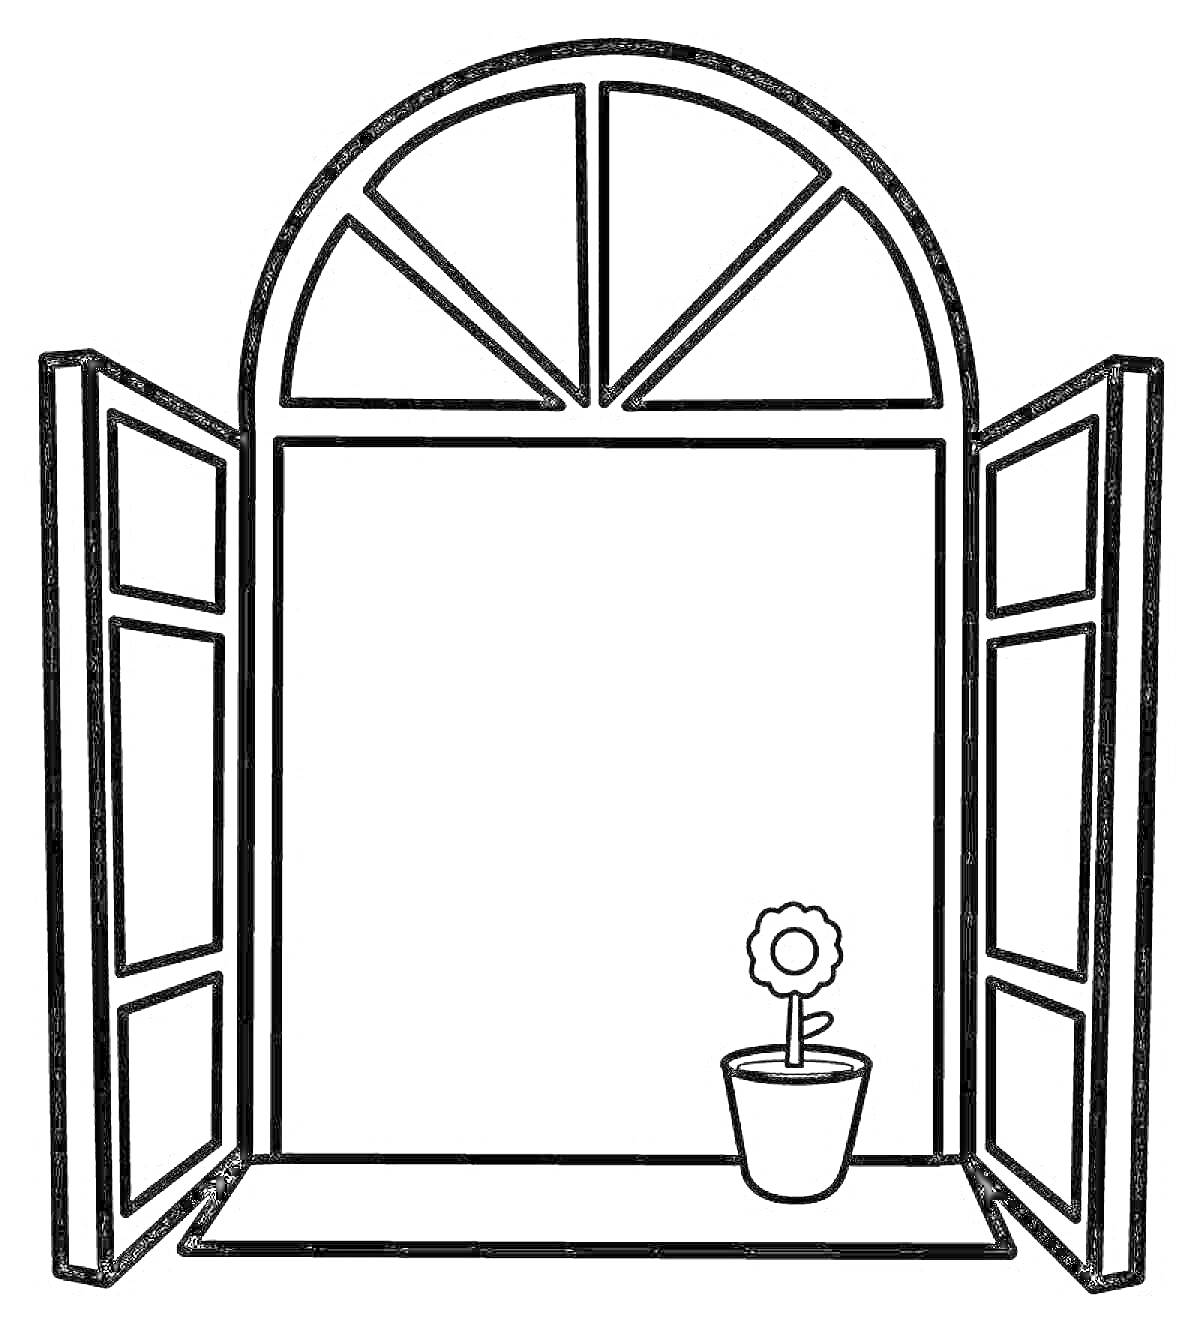 Раскраска Арочное окно с открытыми ставнями и цветком в горшке на подоконнике